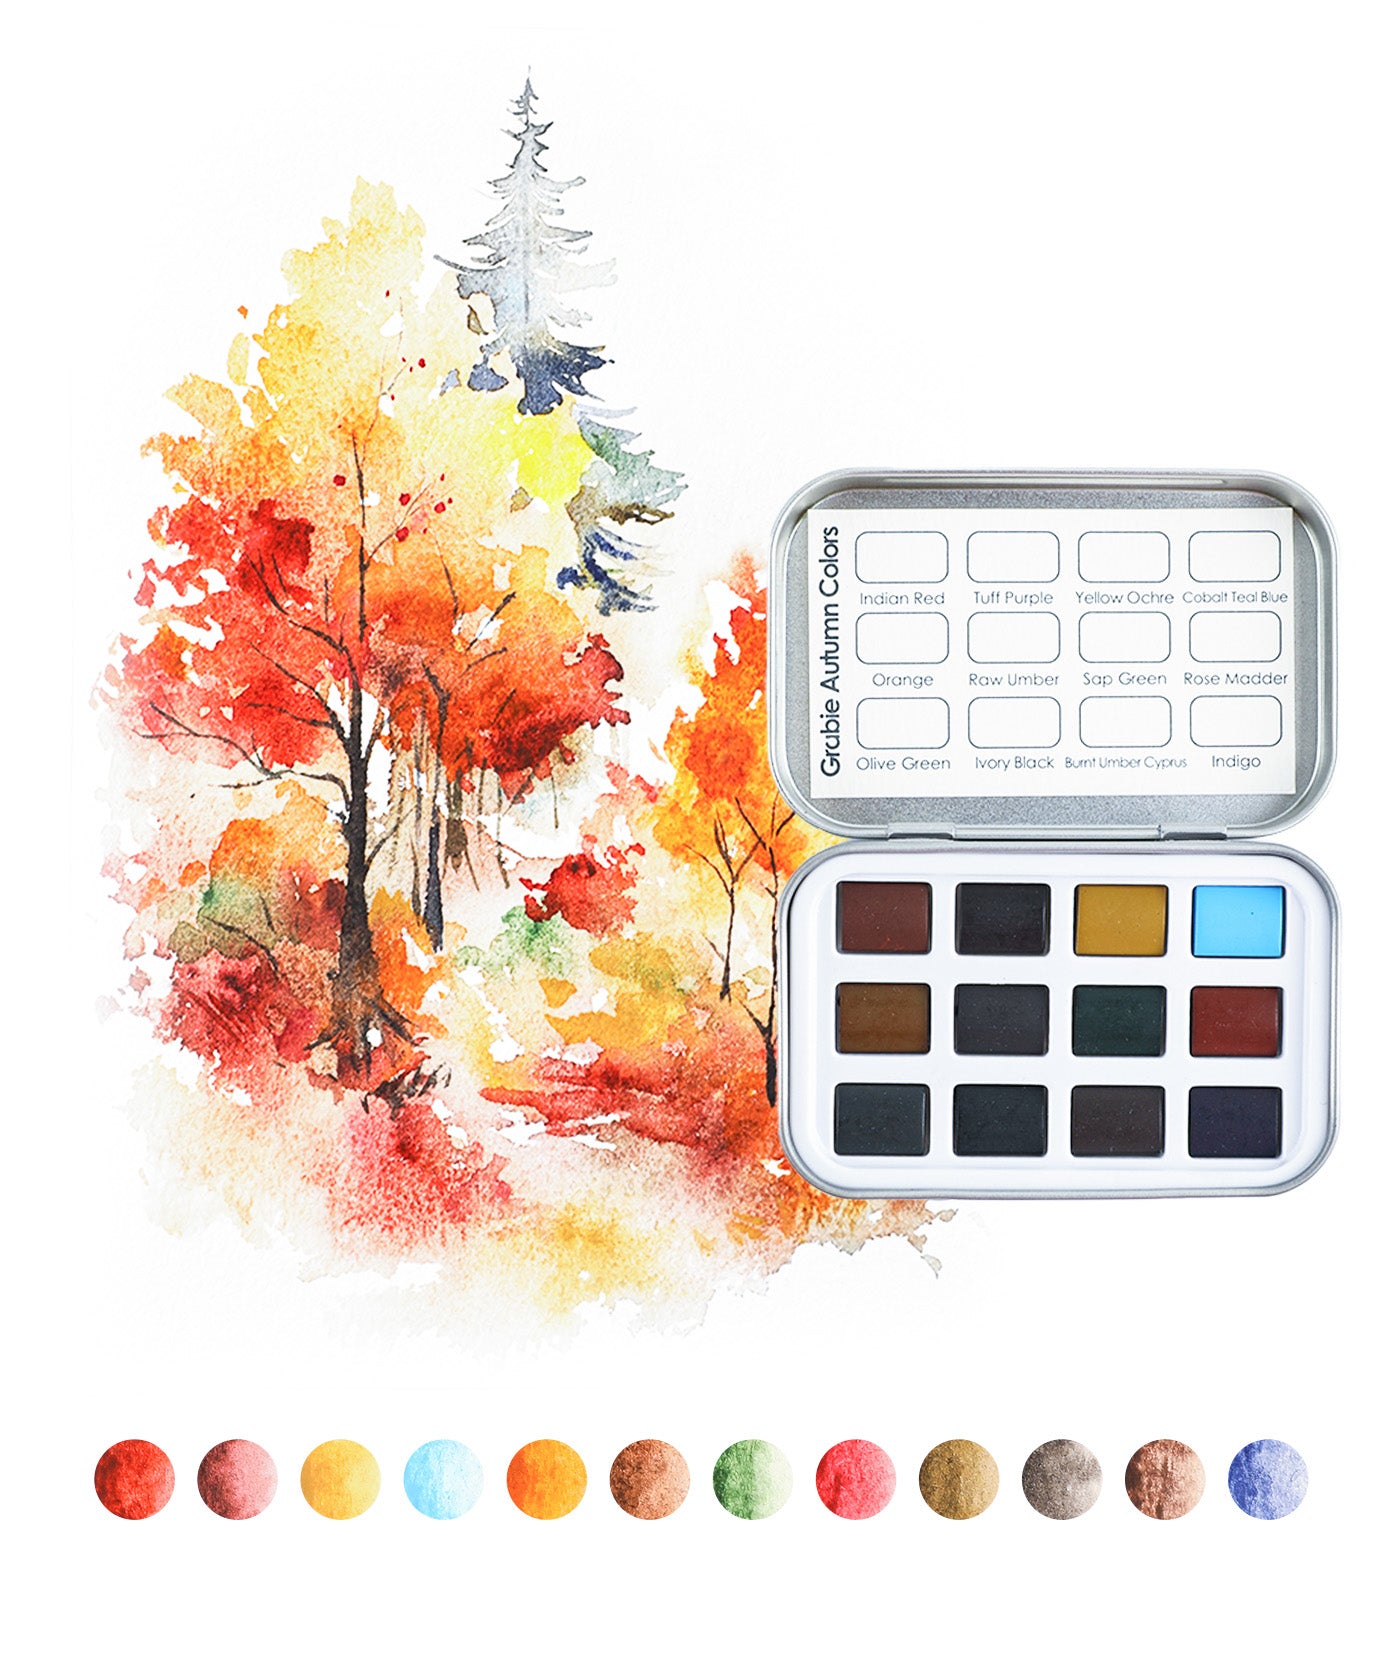 Grabie 100-Color Watercolor Paint Set - Artistic Brilliance in